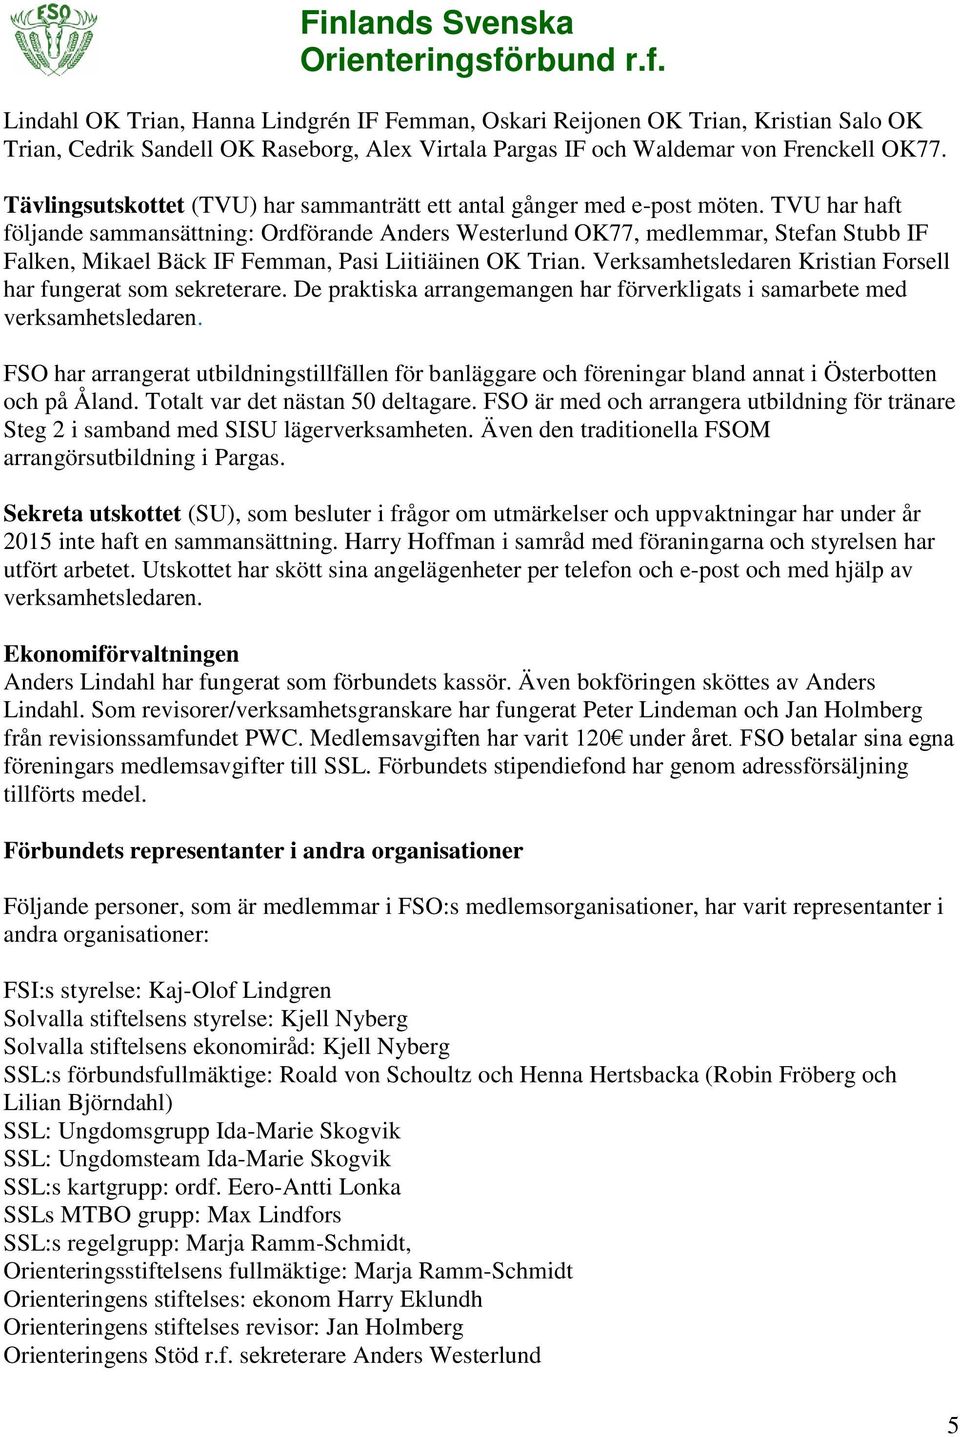 TVU har haft följande sammansättning: Ordförande Anders Westerlund OK77, medlemmar, Stefan Stubb IF Falken, Mikael Bäck IF Femman, Pasi Liitiäinen OK Trian.